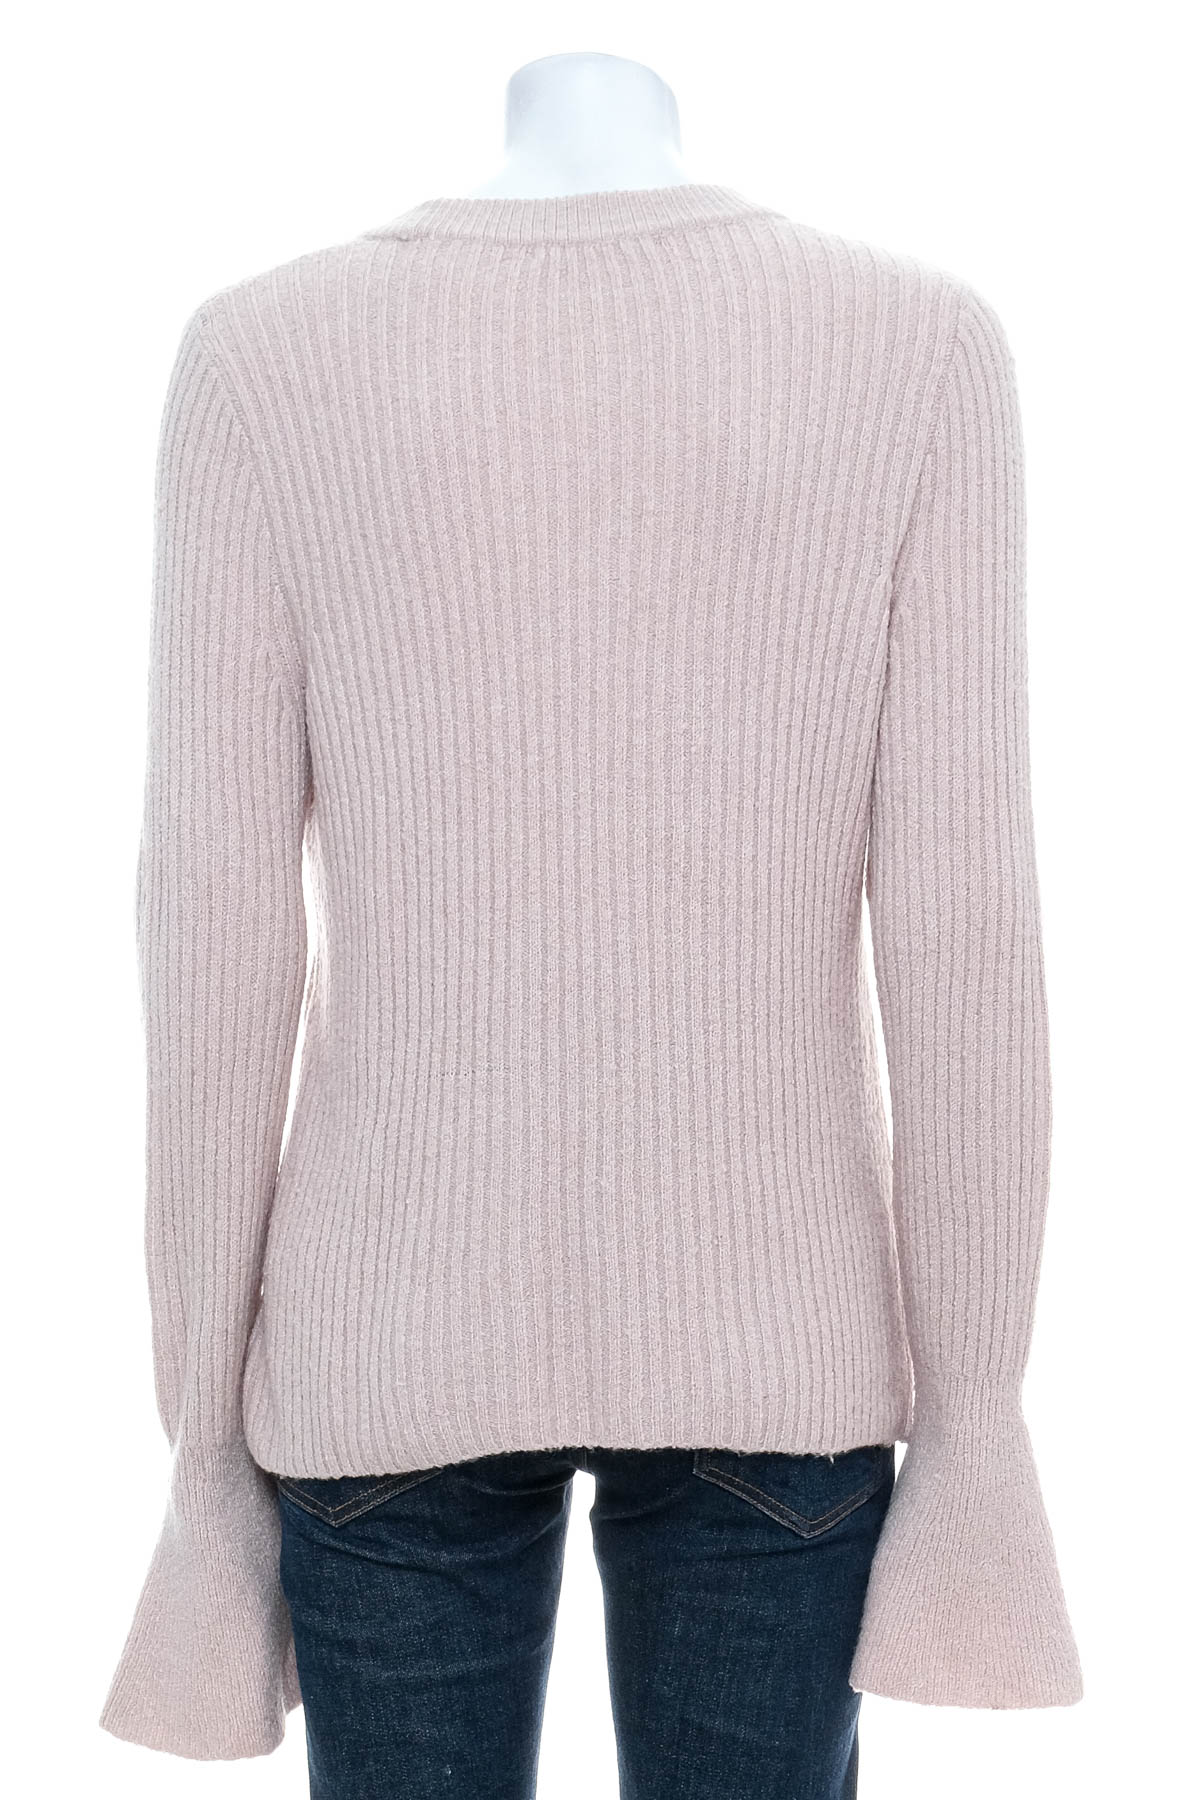 Women's sweater - Madewell - 1